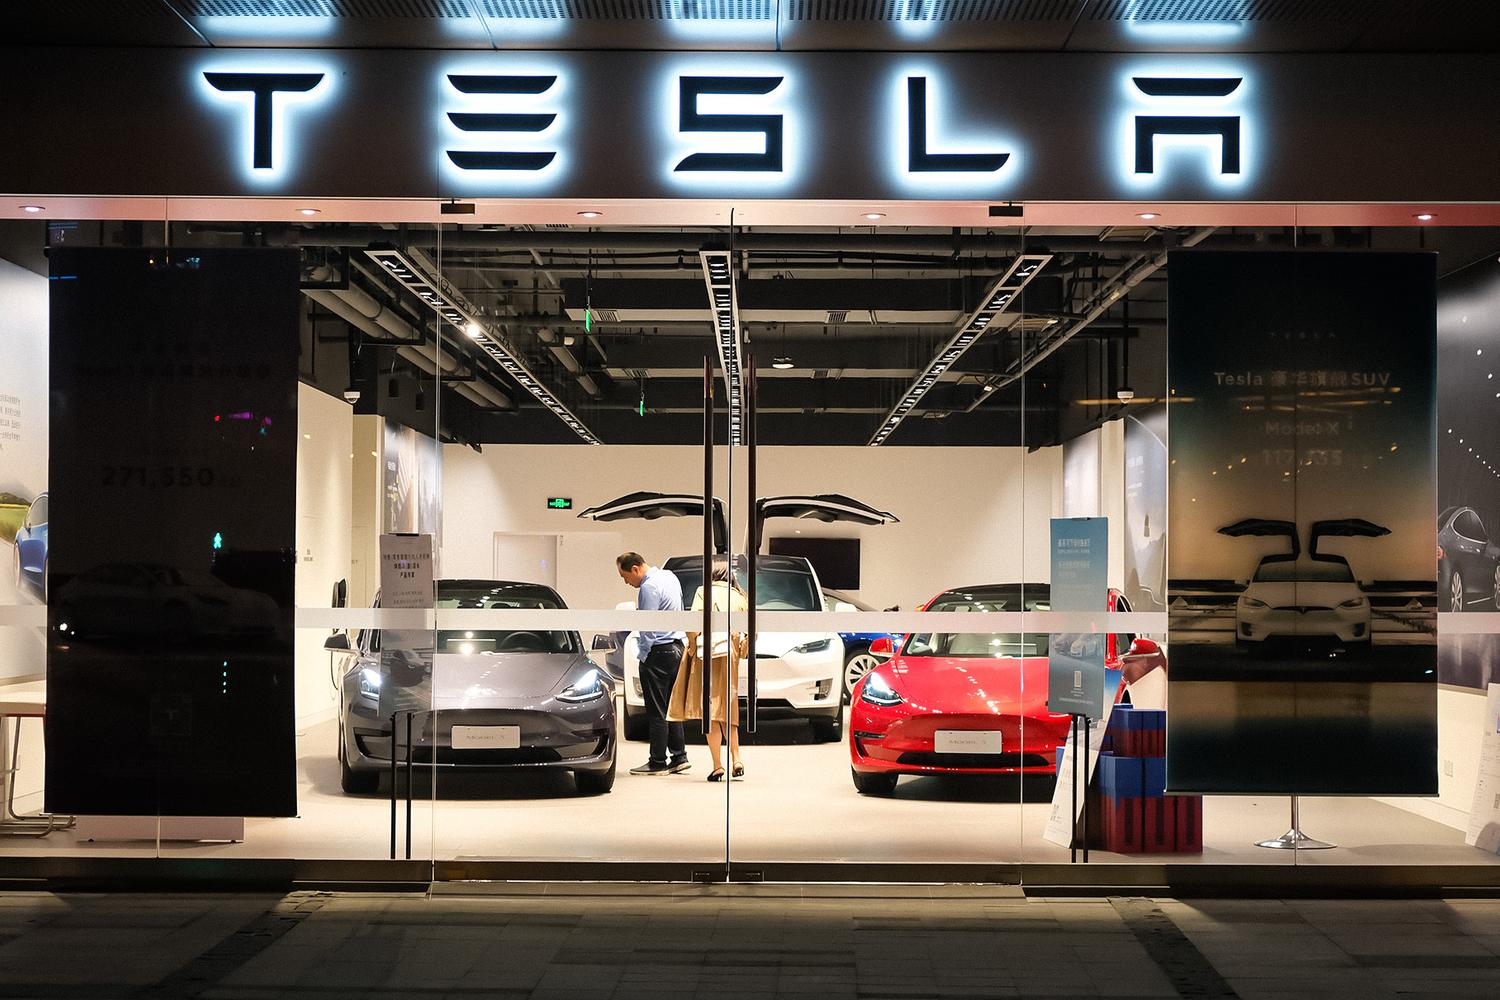 ອະດີດເຈົ້າຂອງ Tesla Model S ກ່າວວ່າ Tesla ກໍາລັງຟ້ອງລາວສໍາລັບຂໍ້ຄວາມທາງສື່ສັງຄົມທີ່ບໍ່ດີ